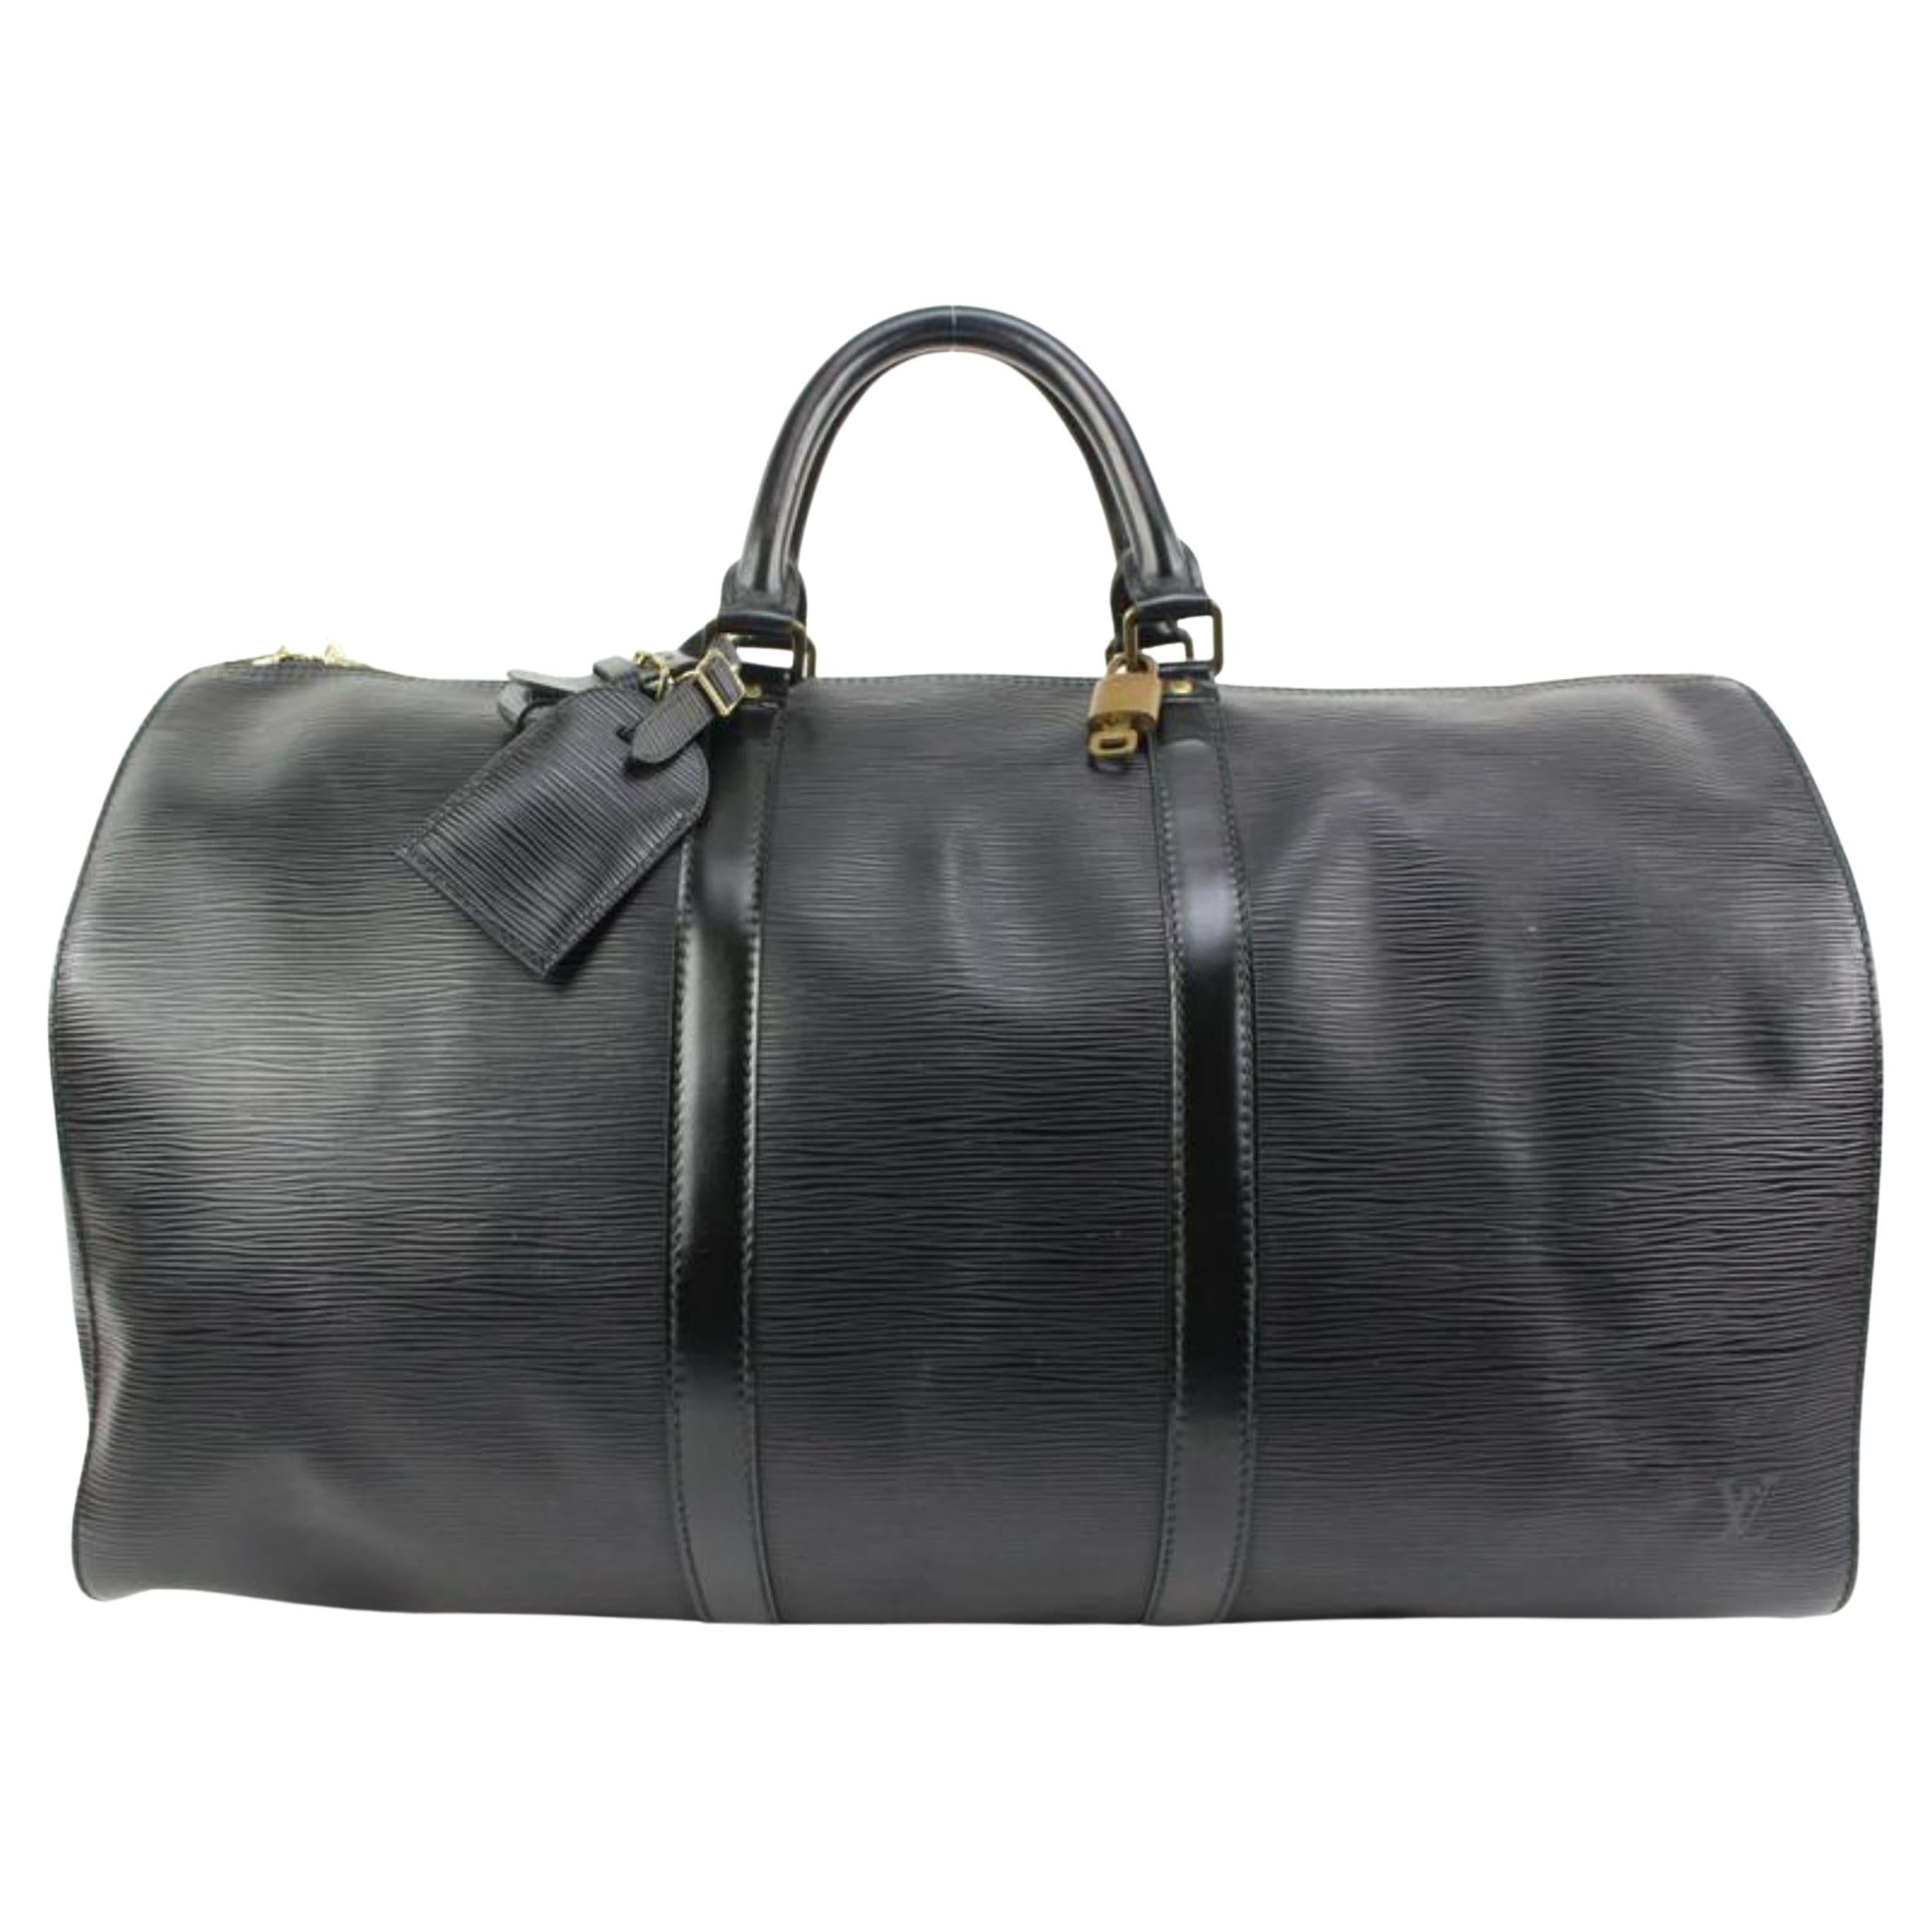 Louis Vuitton Black Epi Leather Noir Keepall 50 Duffle Bag 66lv315s